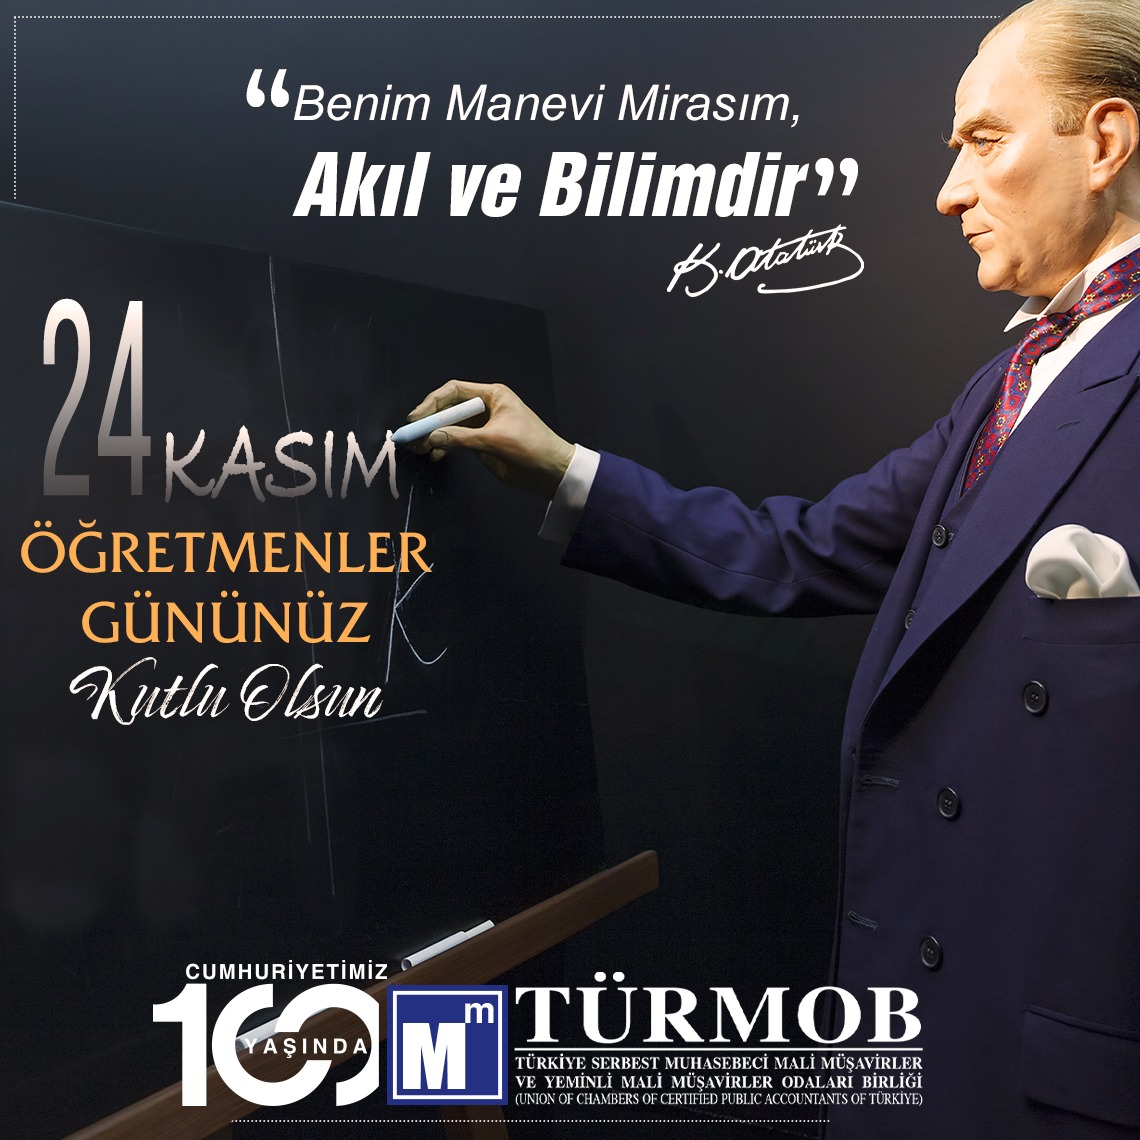 “Benim manevi mirasım bilim ve akıldır.” Mustafa Kemal ATATÜRK #24KasımÖğretmenlerGünü kutlu olsun…ow.ly/ocWU50QaBJ1 #türmob